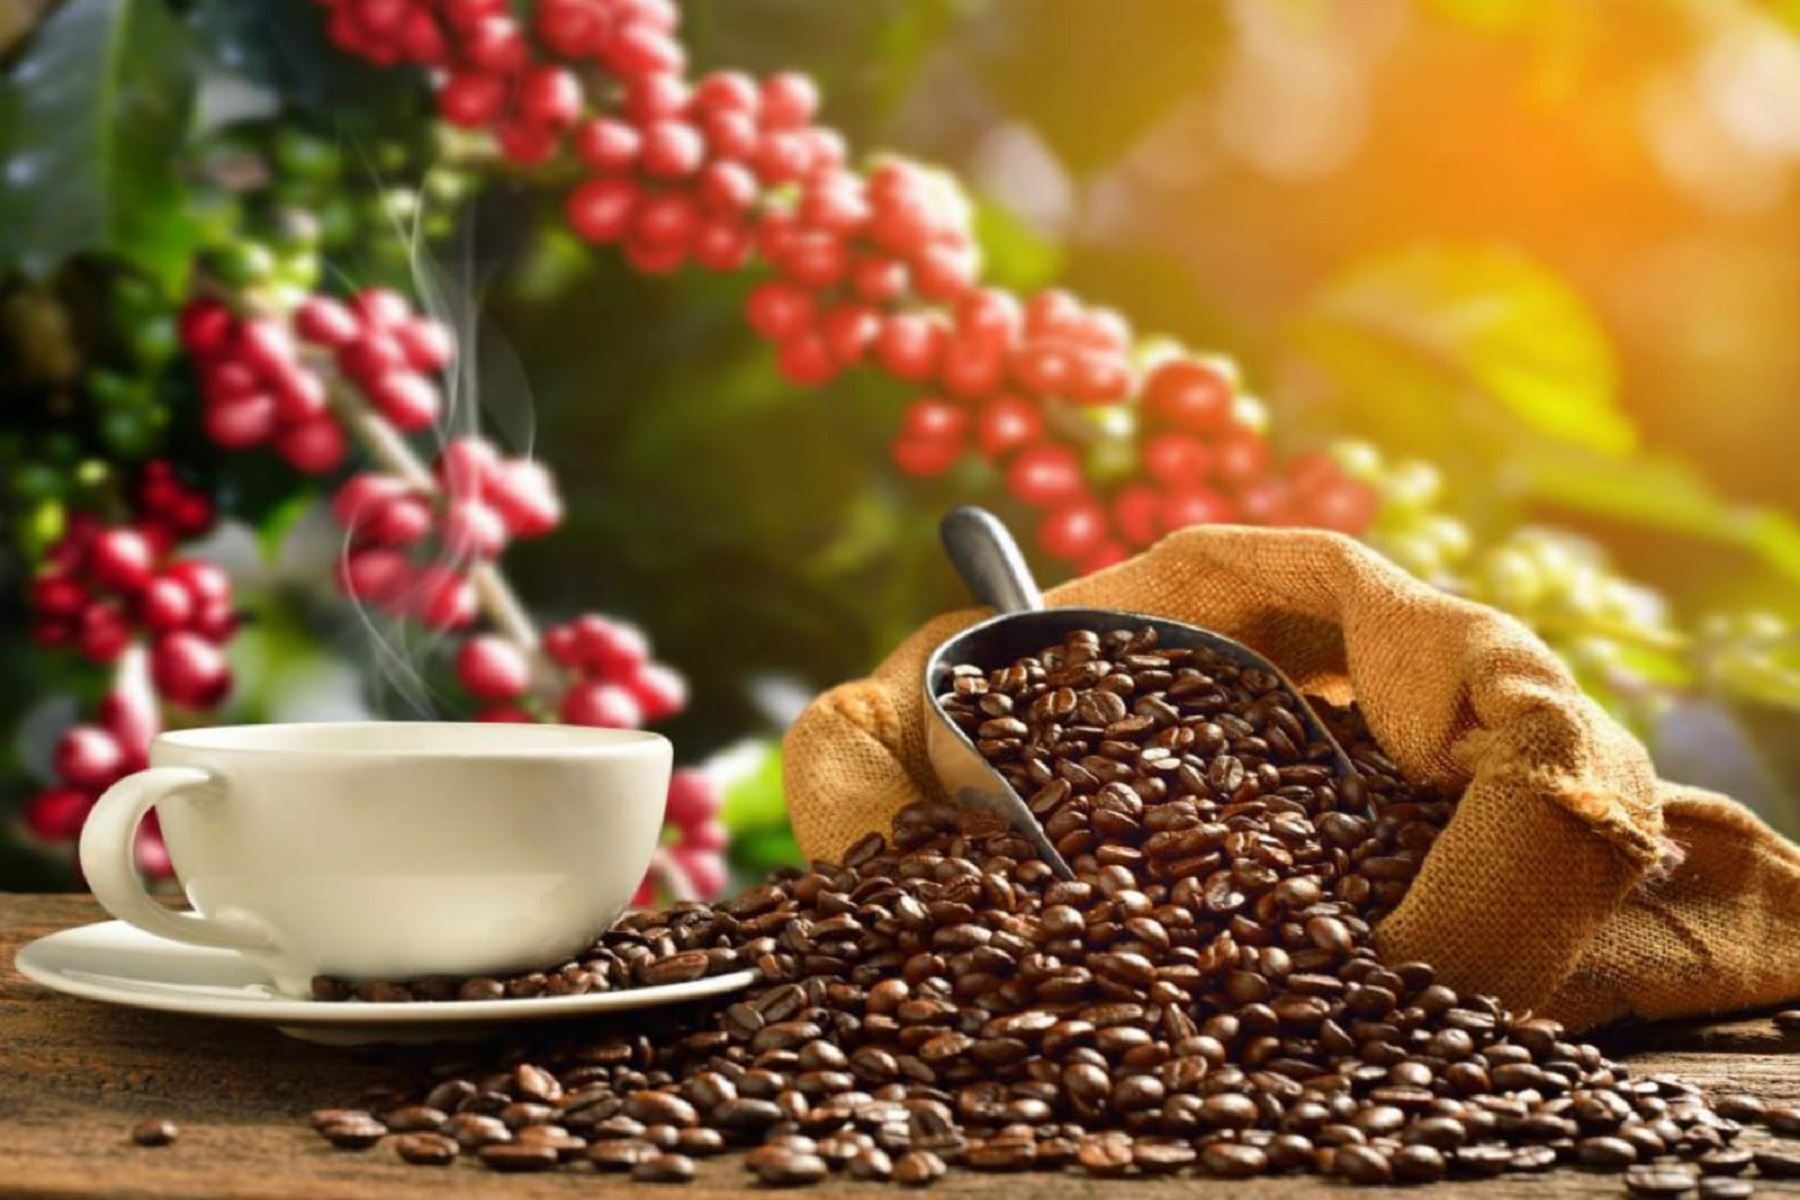 Productores de café solicitan estrategia urgente para continuar exportando a la Unión Europea